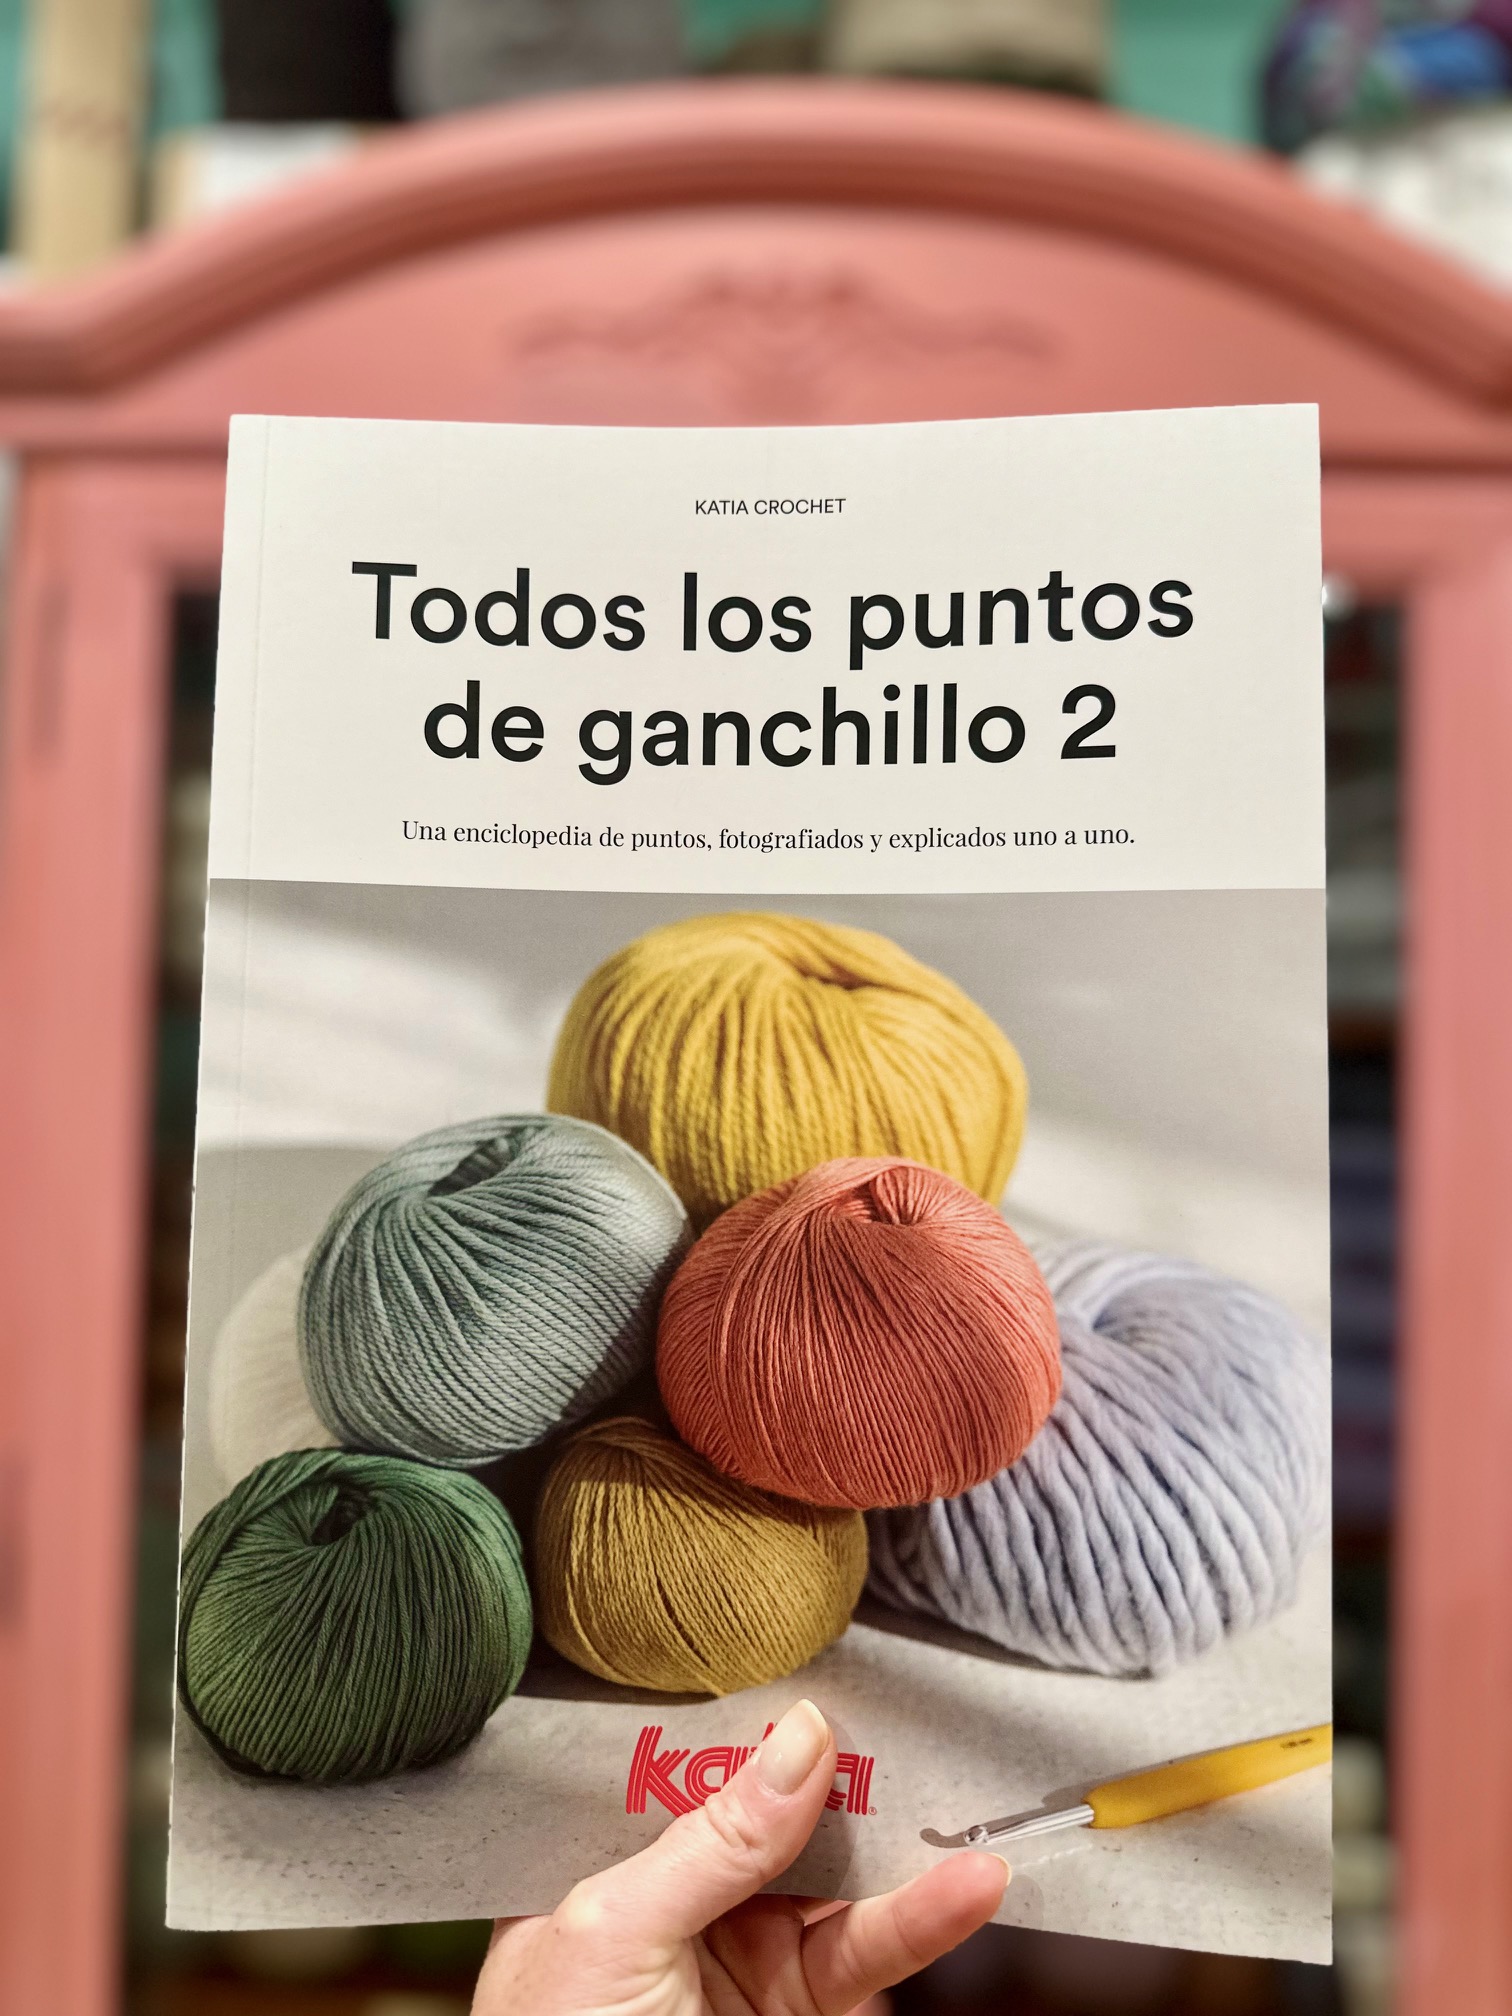 Comprar Kits de Punto y Ganchillo Online